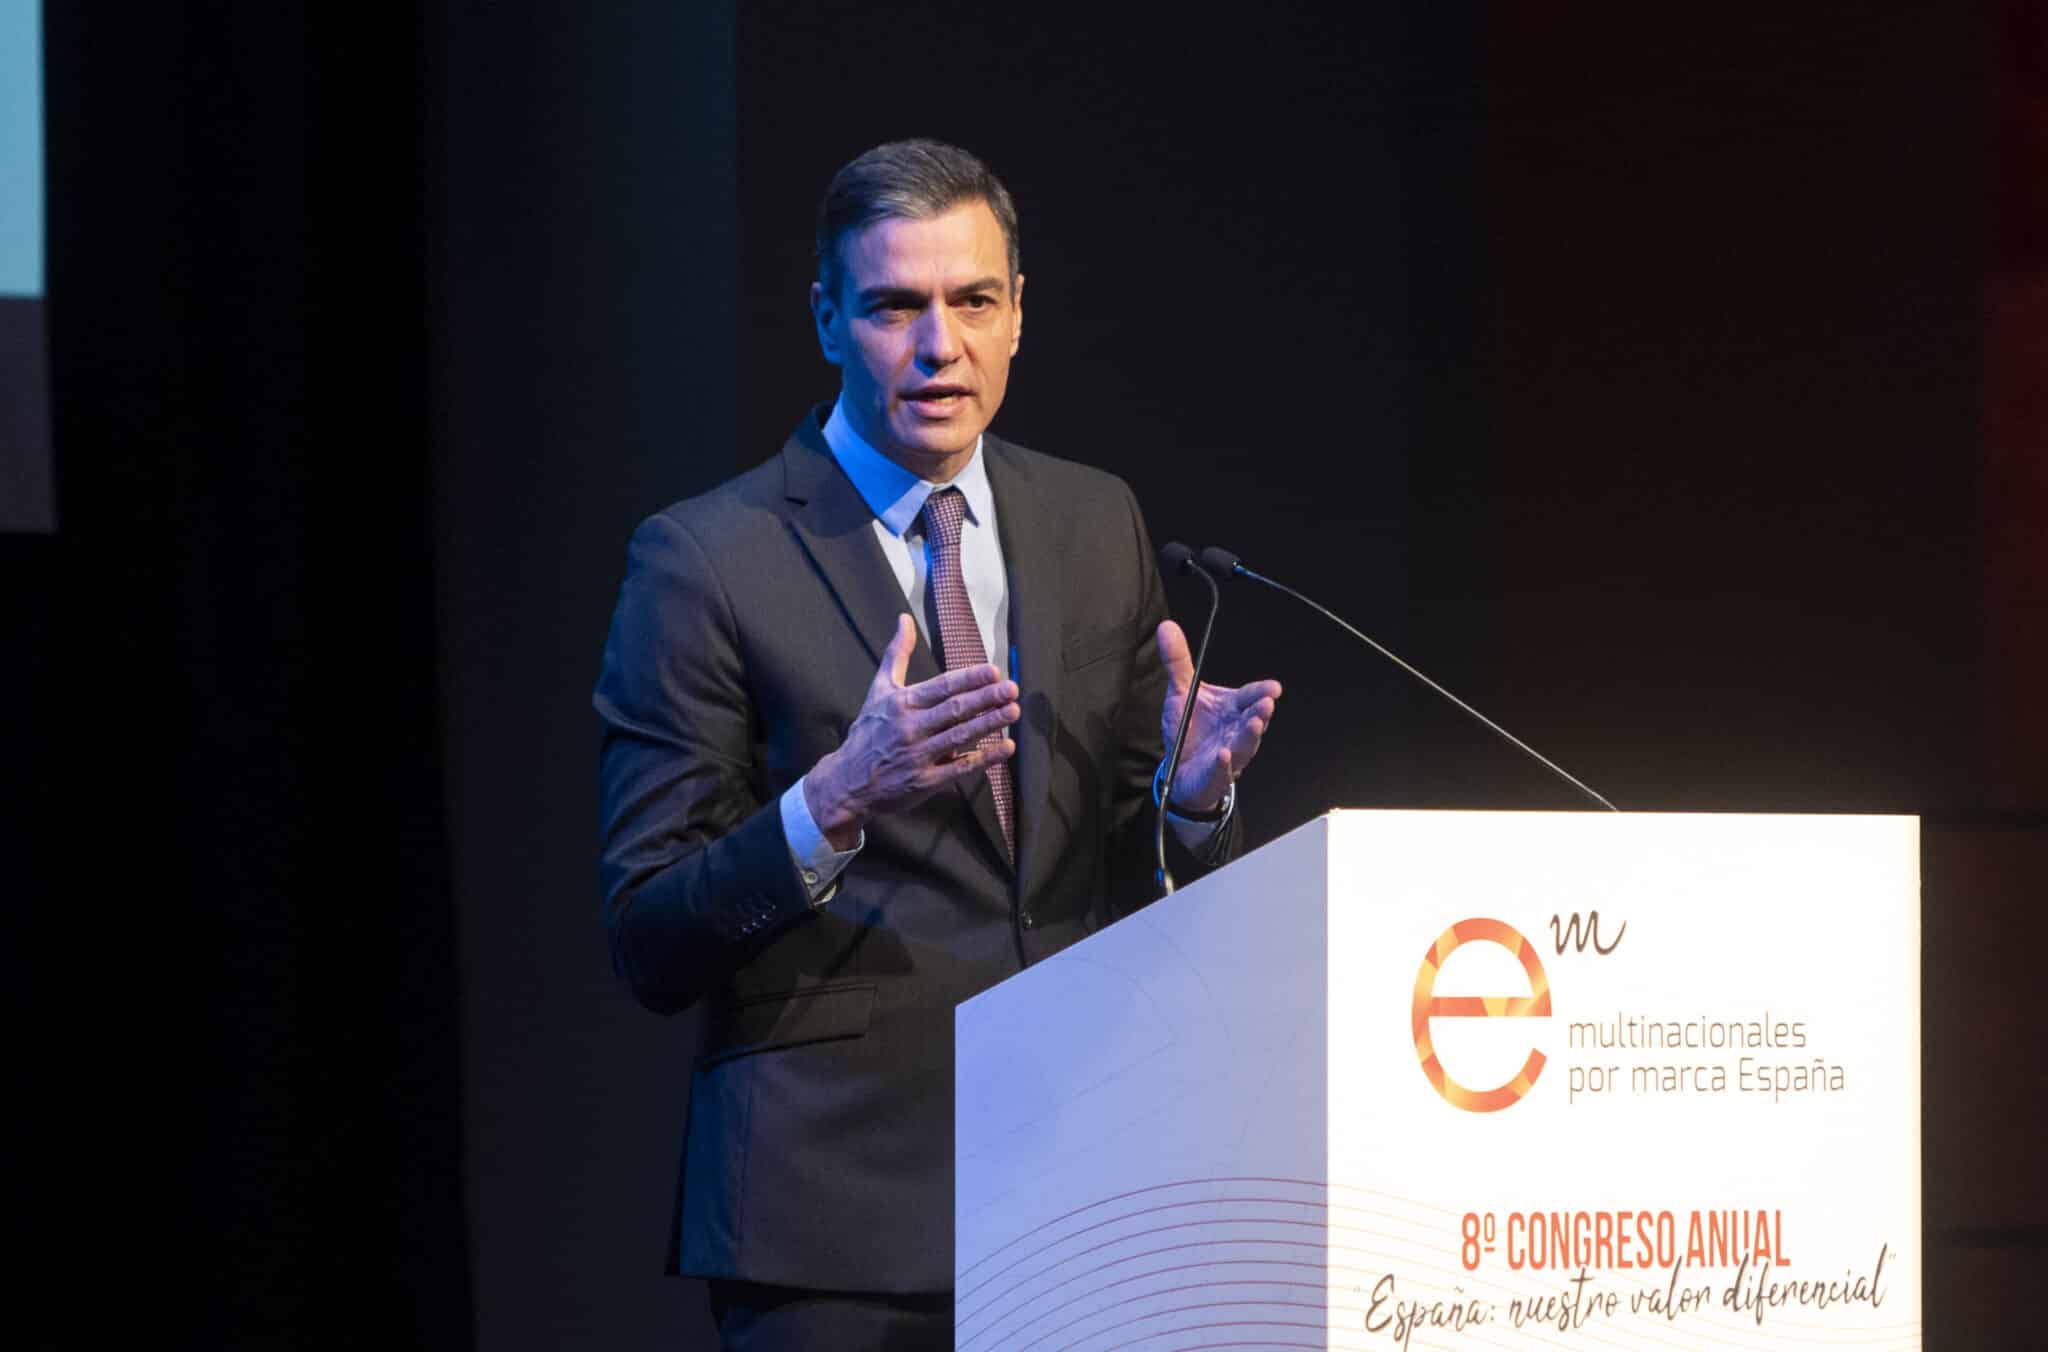 El presidente del Gobierno, Pedro Sánchez, interviene en el Congreso Anual de Multinacionales por marca España, en la Sala de Columnas del Círculo de Bellas Artes